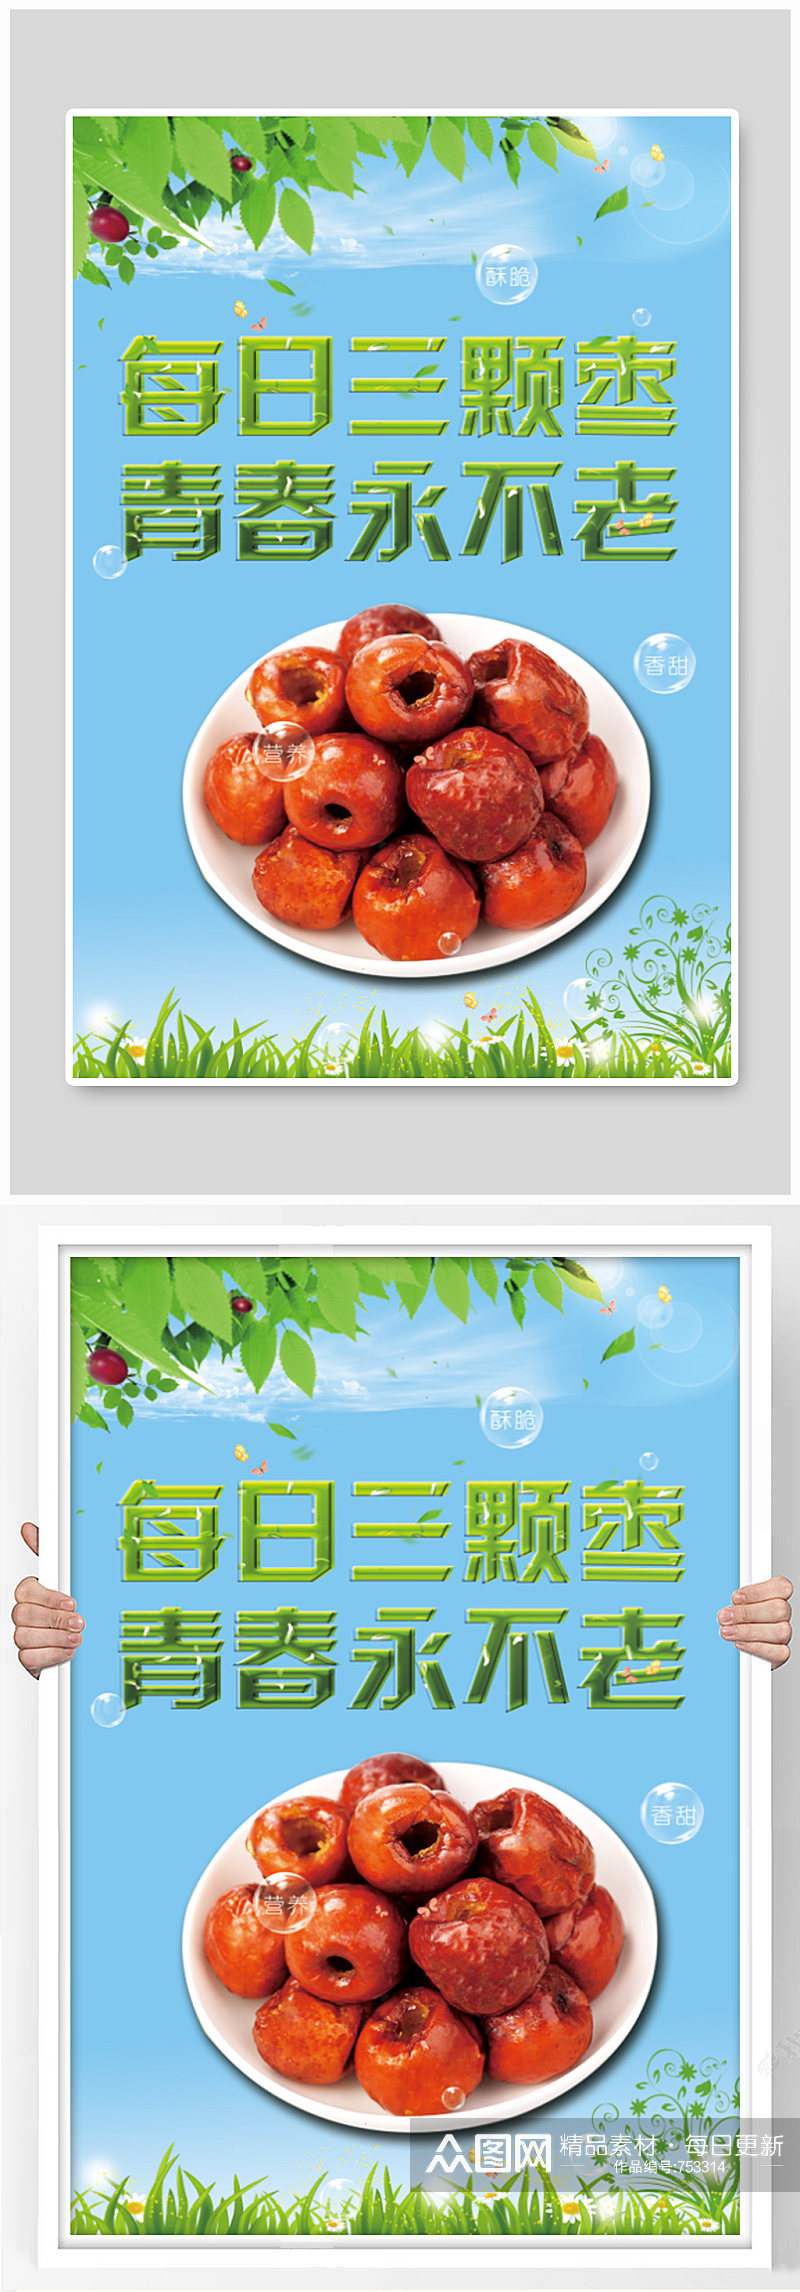 红枣文化海报设计素材